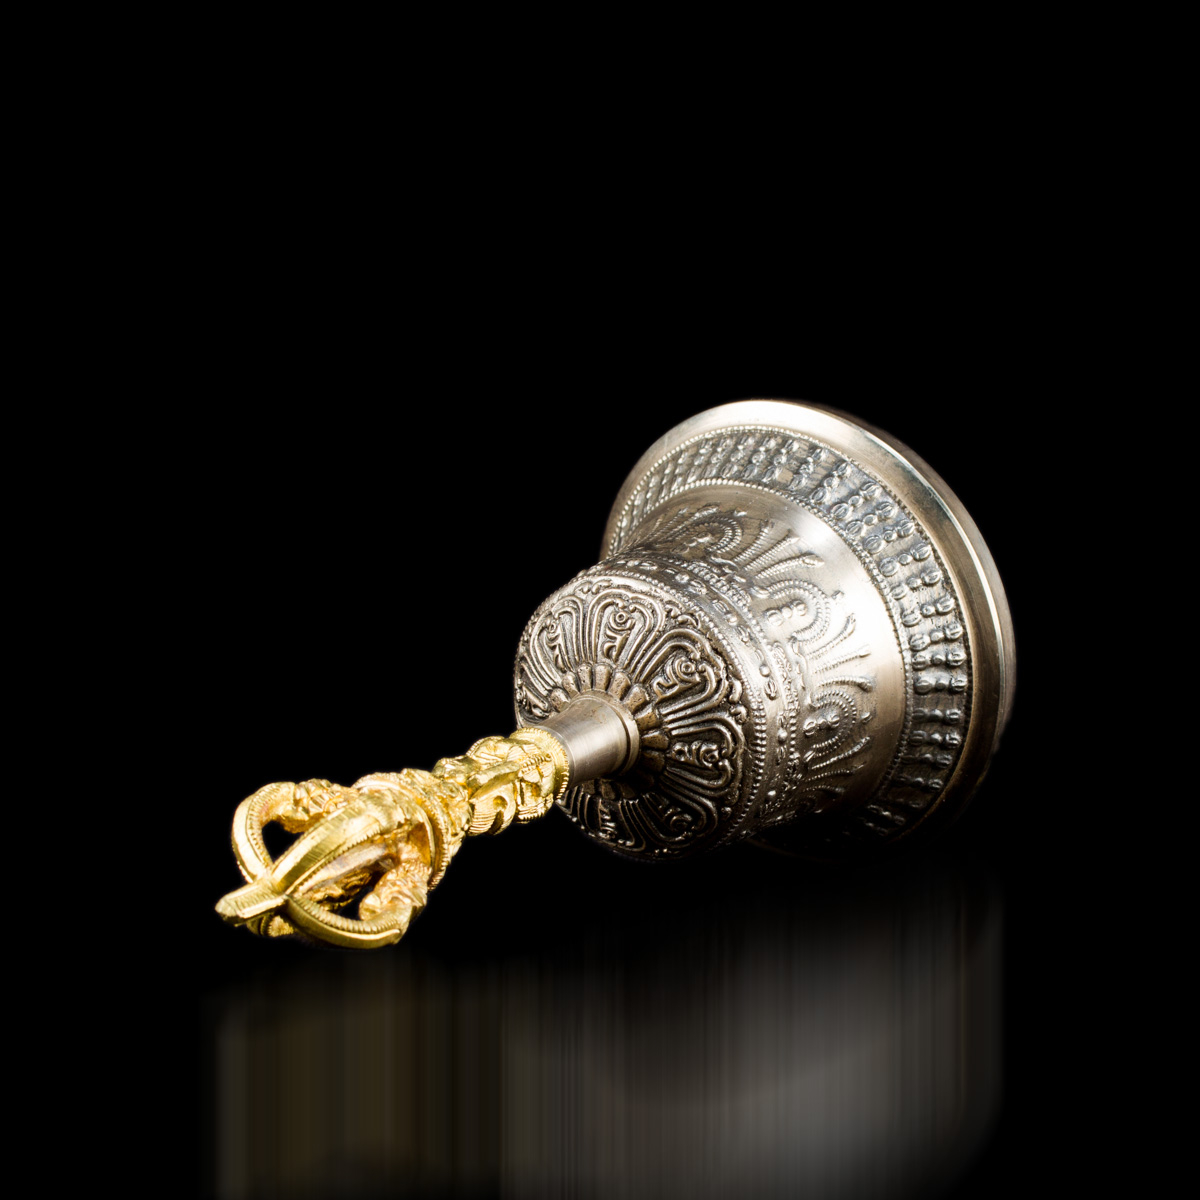 Колокольчик с ваджрой (серебристый), 15,5 см, Дехрадун (Индия), 15,5 см, серебристый